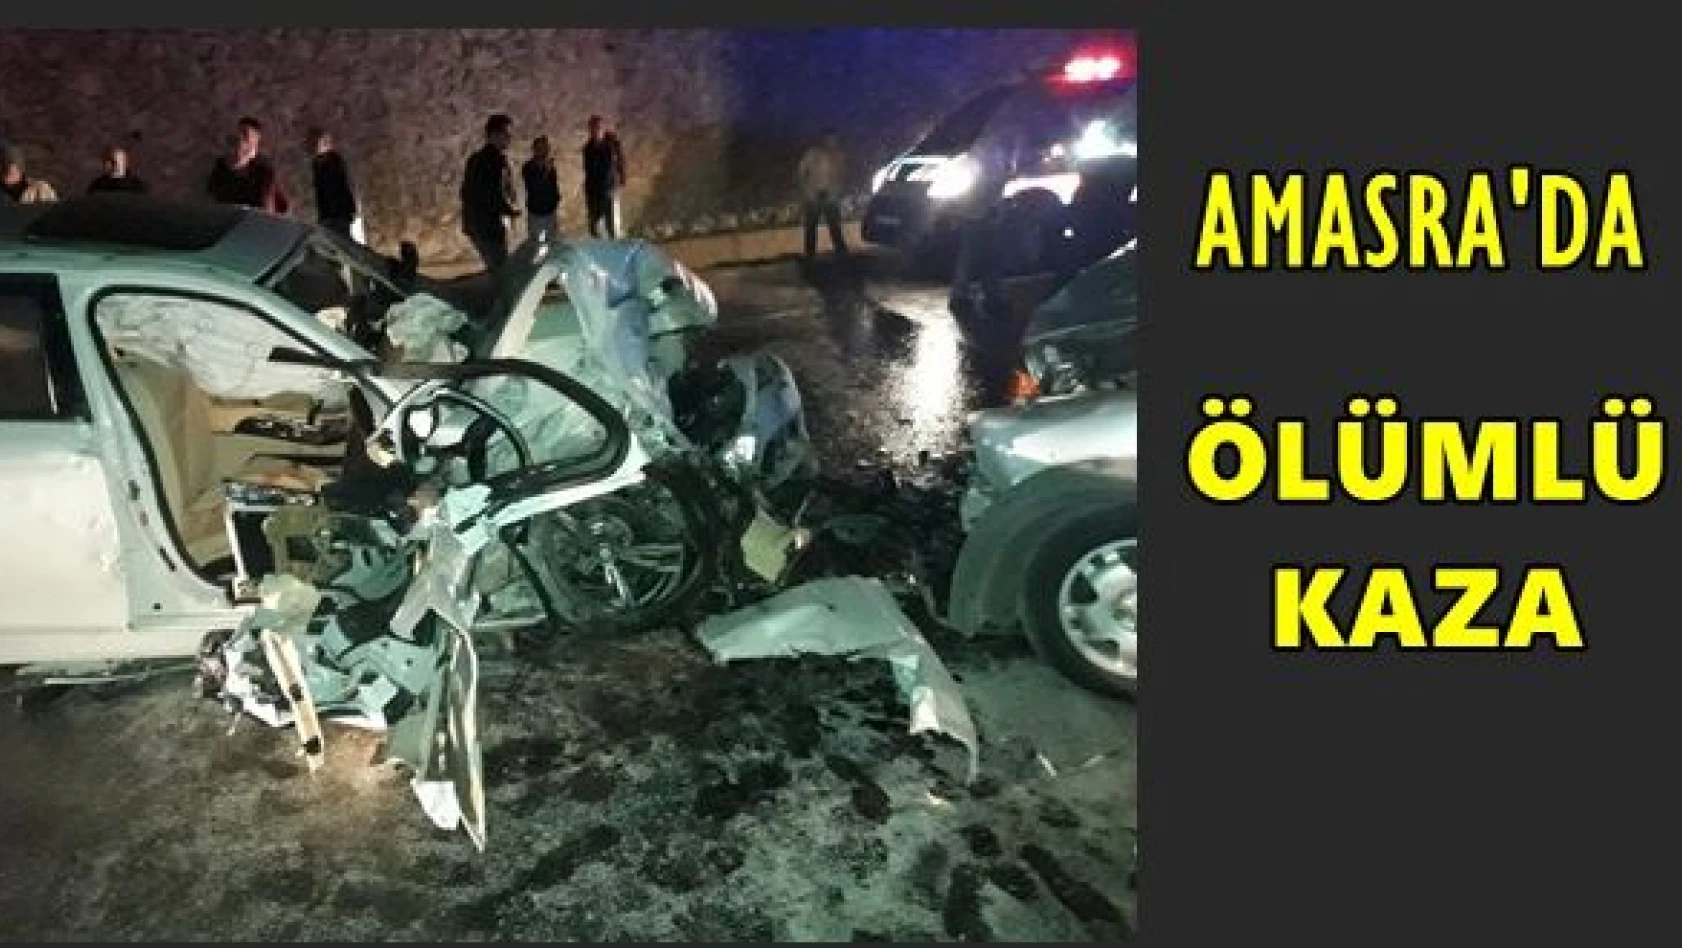 Amasra'da ölümlü kaza!